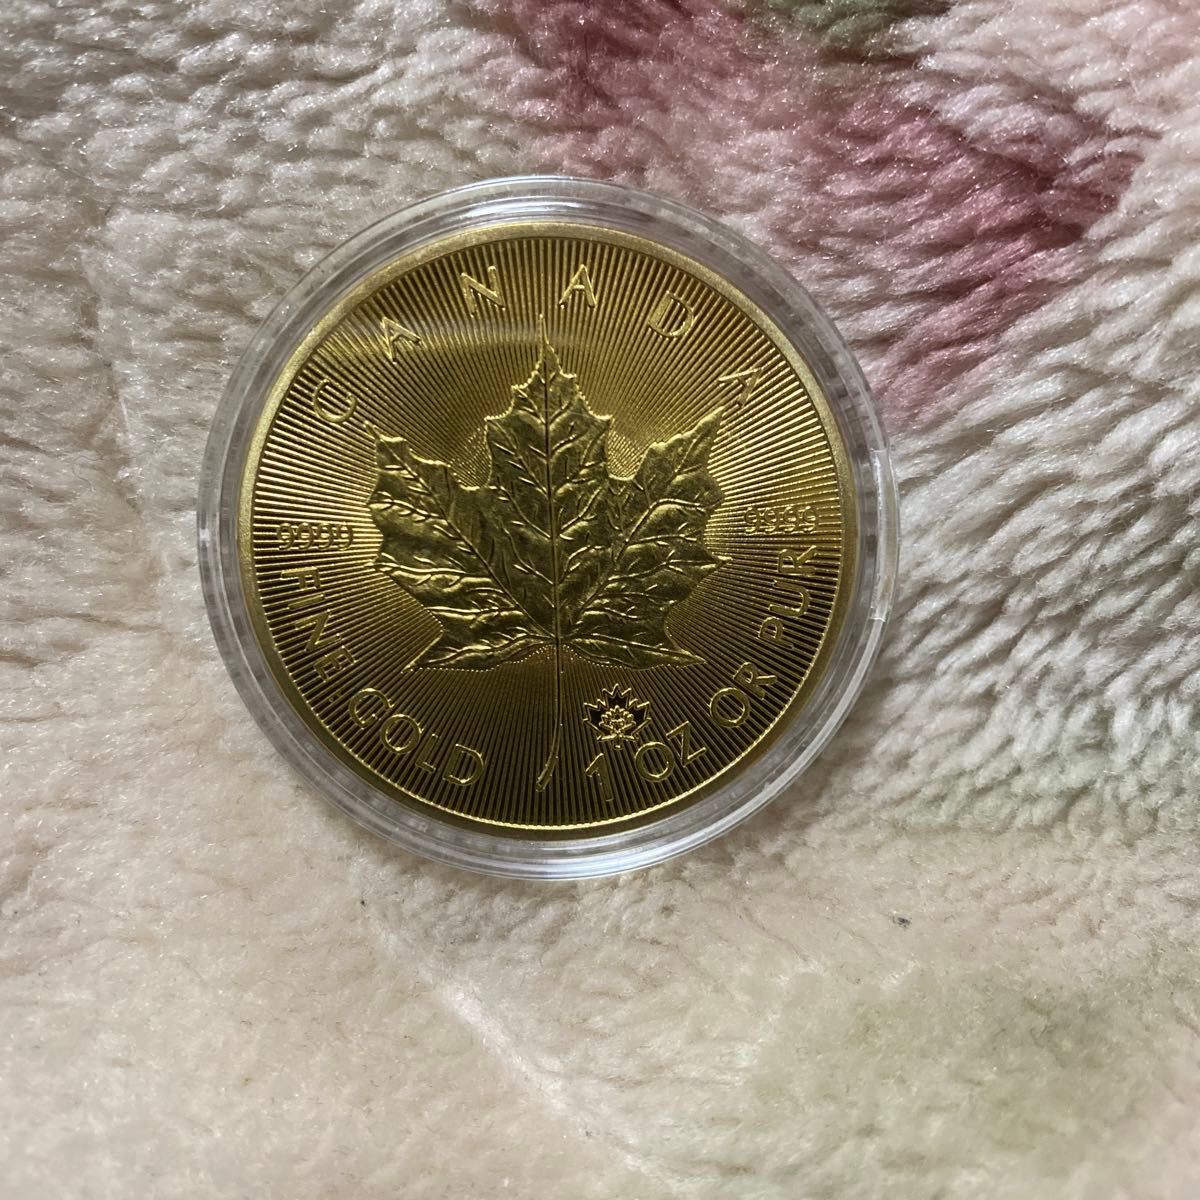 カナダ1オンス金額。2021年製。このコインは24GPレプリカとなります。新品未使用カプセル入りです。